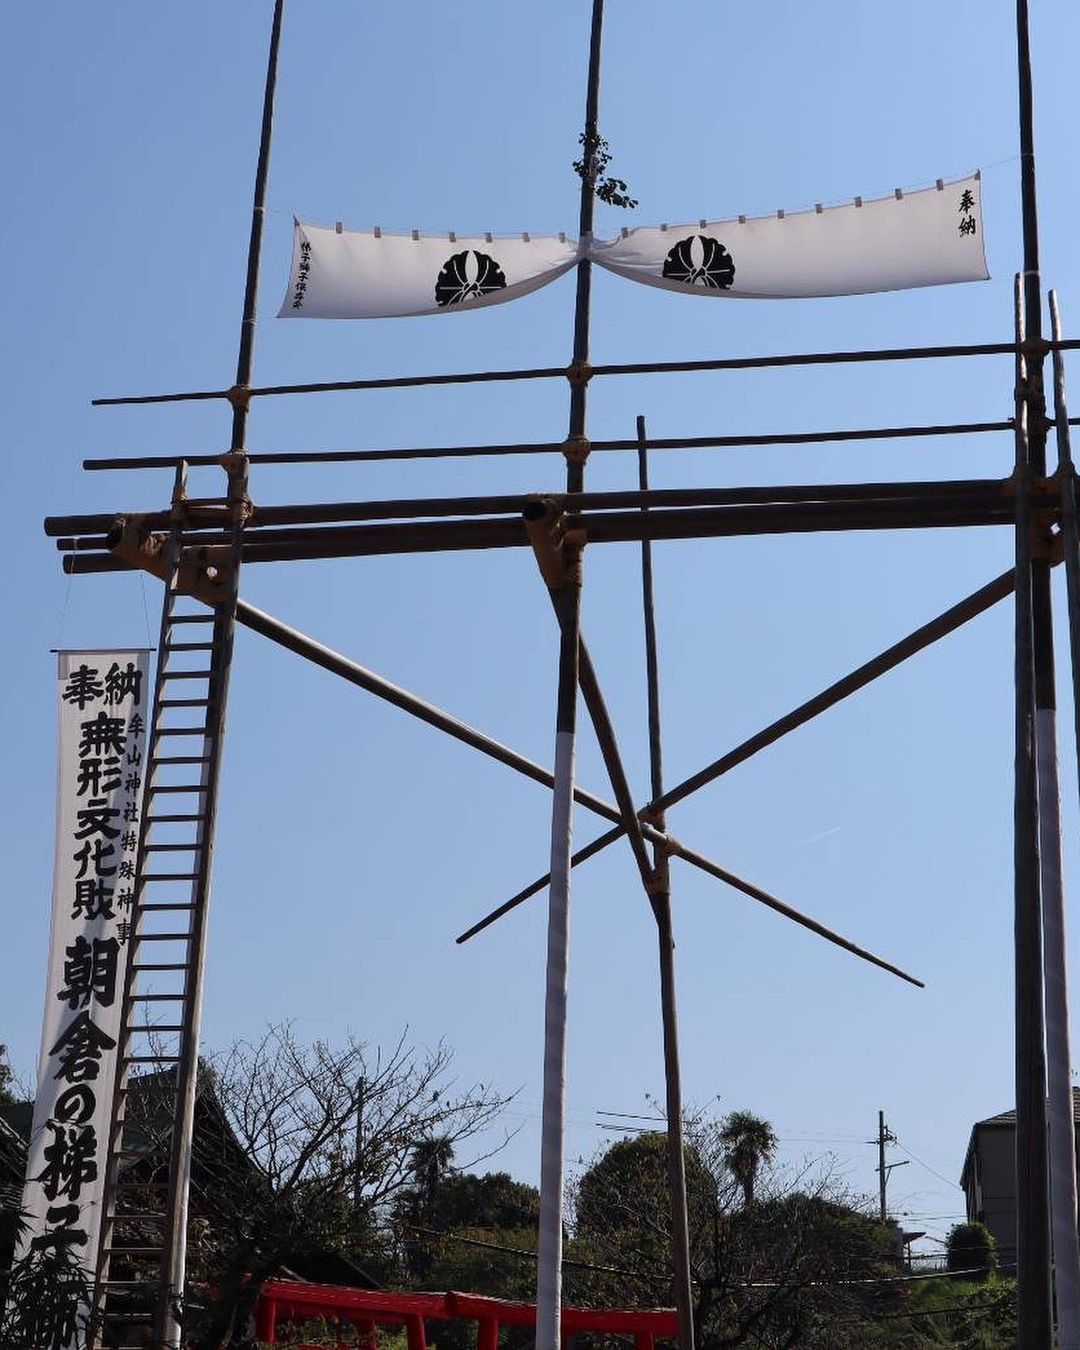 知多市朝倉の牟山神社の「梯子獅子」を観覧